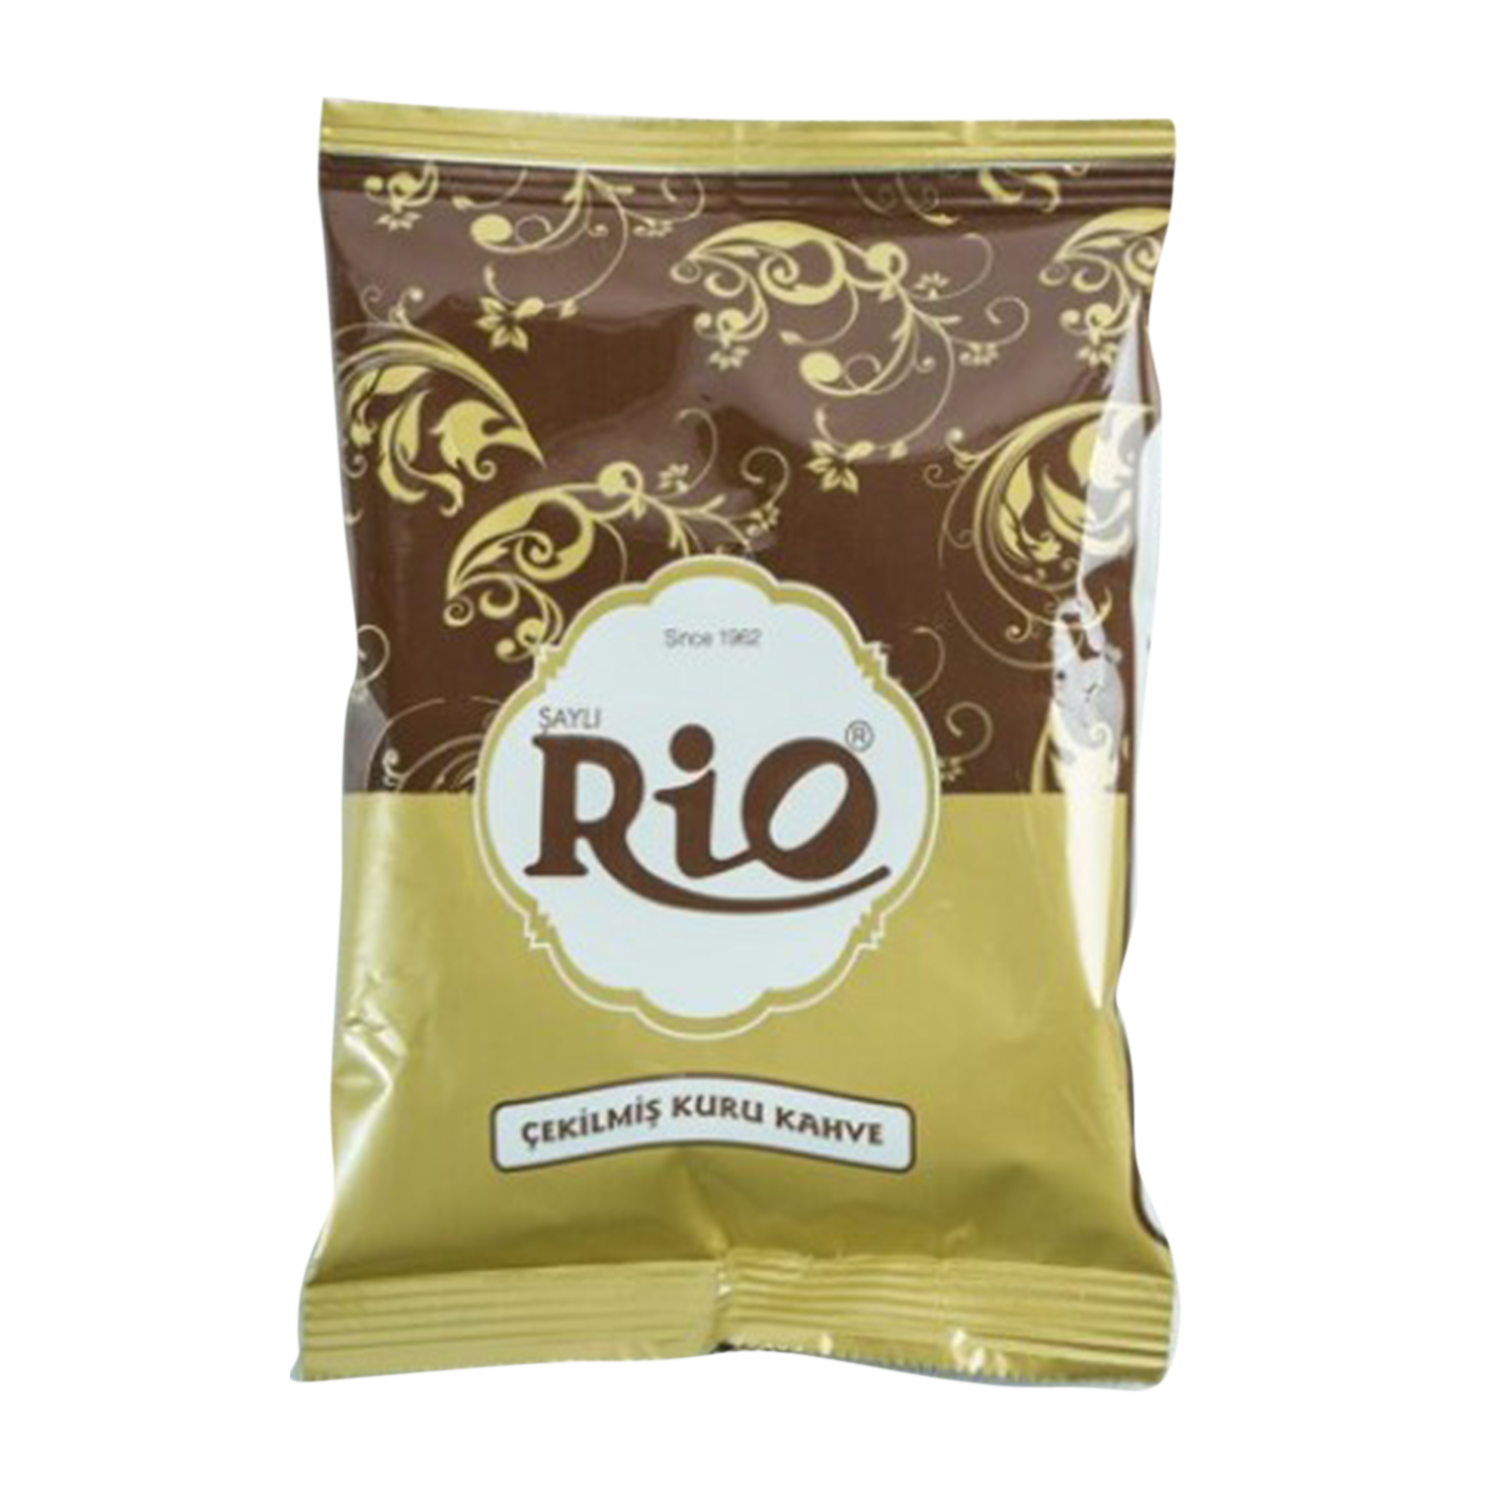 Şaylı Rio Türk Kahvesi 50 GR